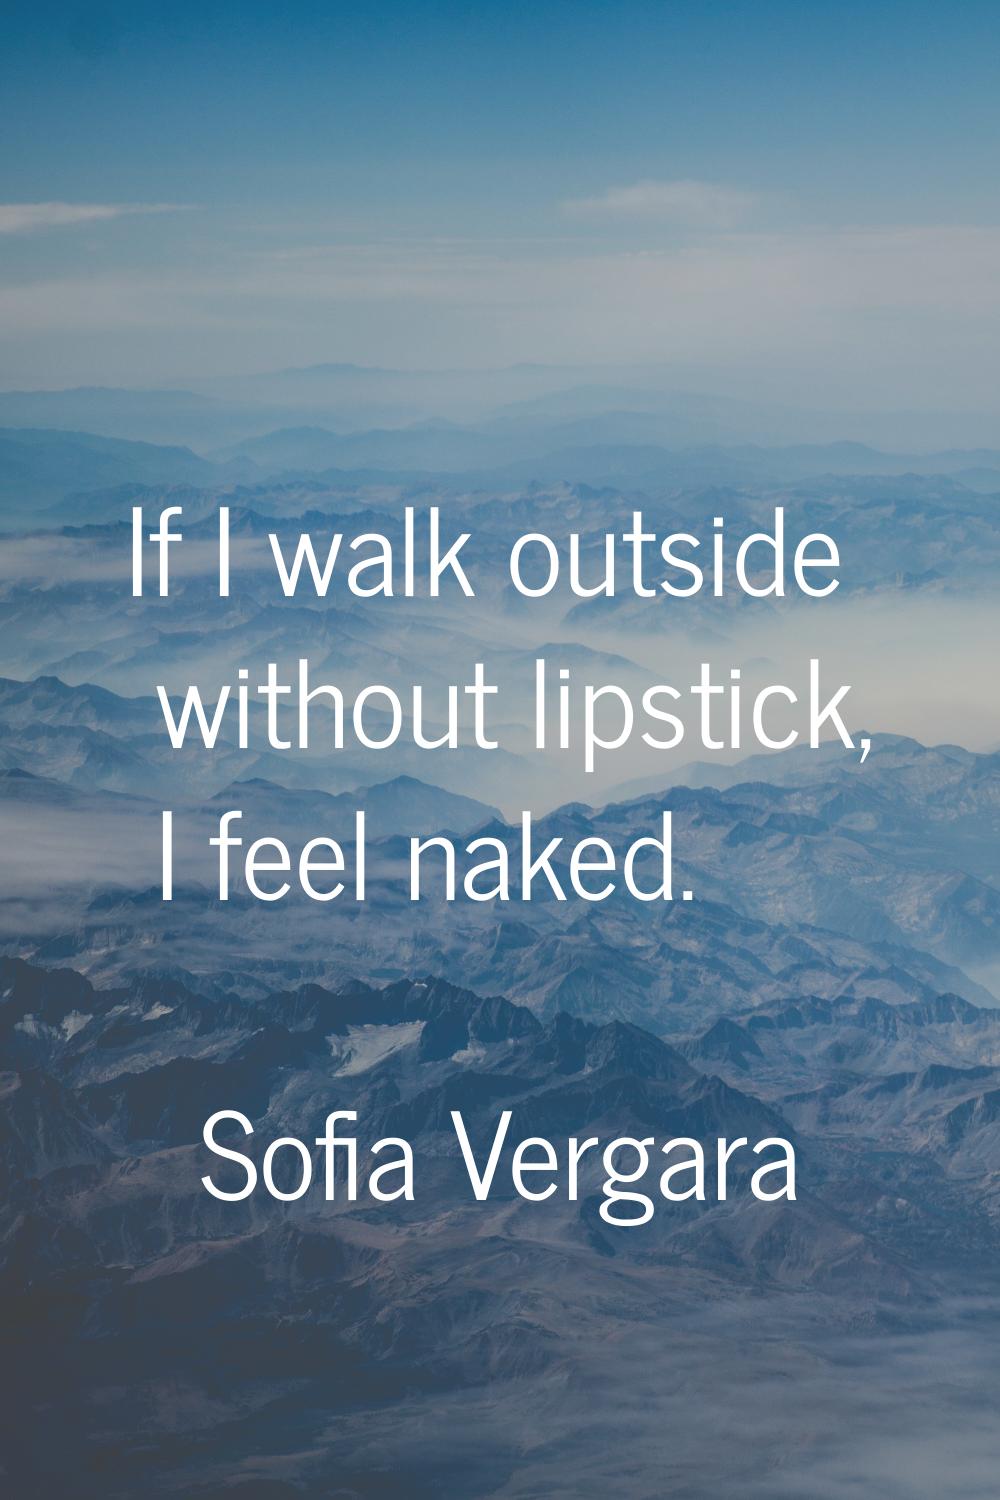 If I walk outside without lipstick, I feel naked.